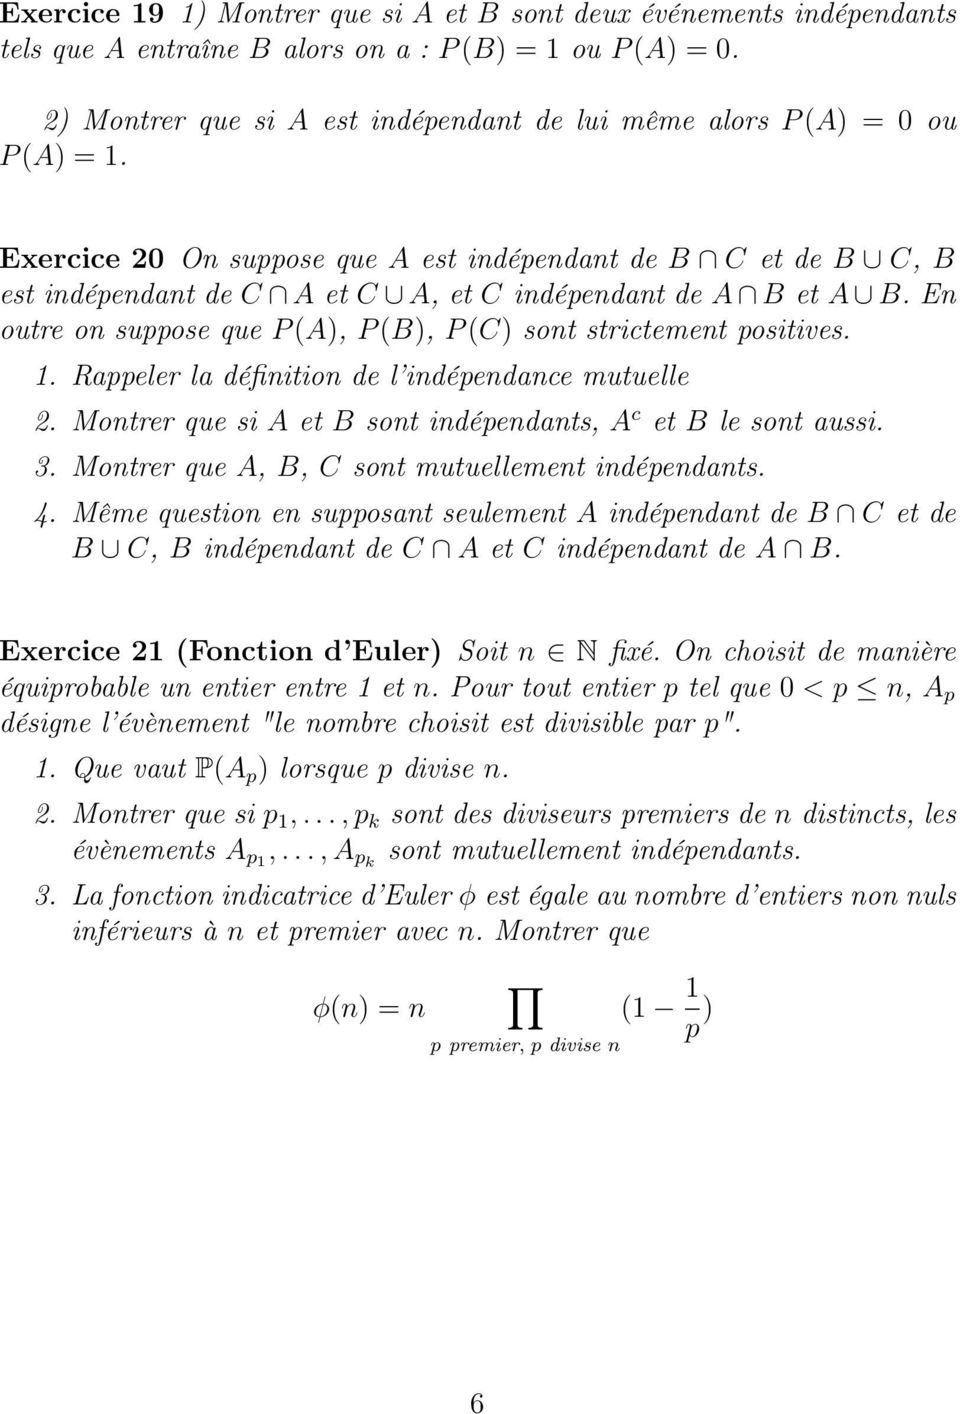 Exercice 20 On suppose que A est indépendant de B C et de B C, B est indépendant de C A et C A, et C indépendant de A B et A B. En outre on suppose que P (A), P (B), P (C) sont strictement positives.